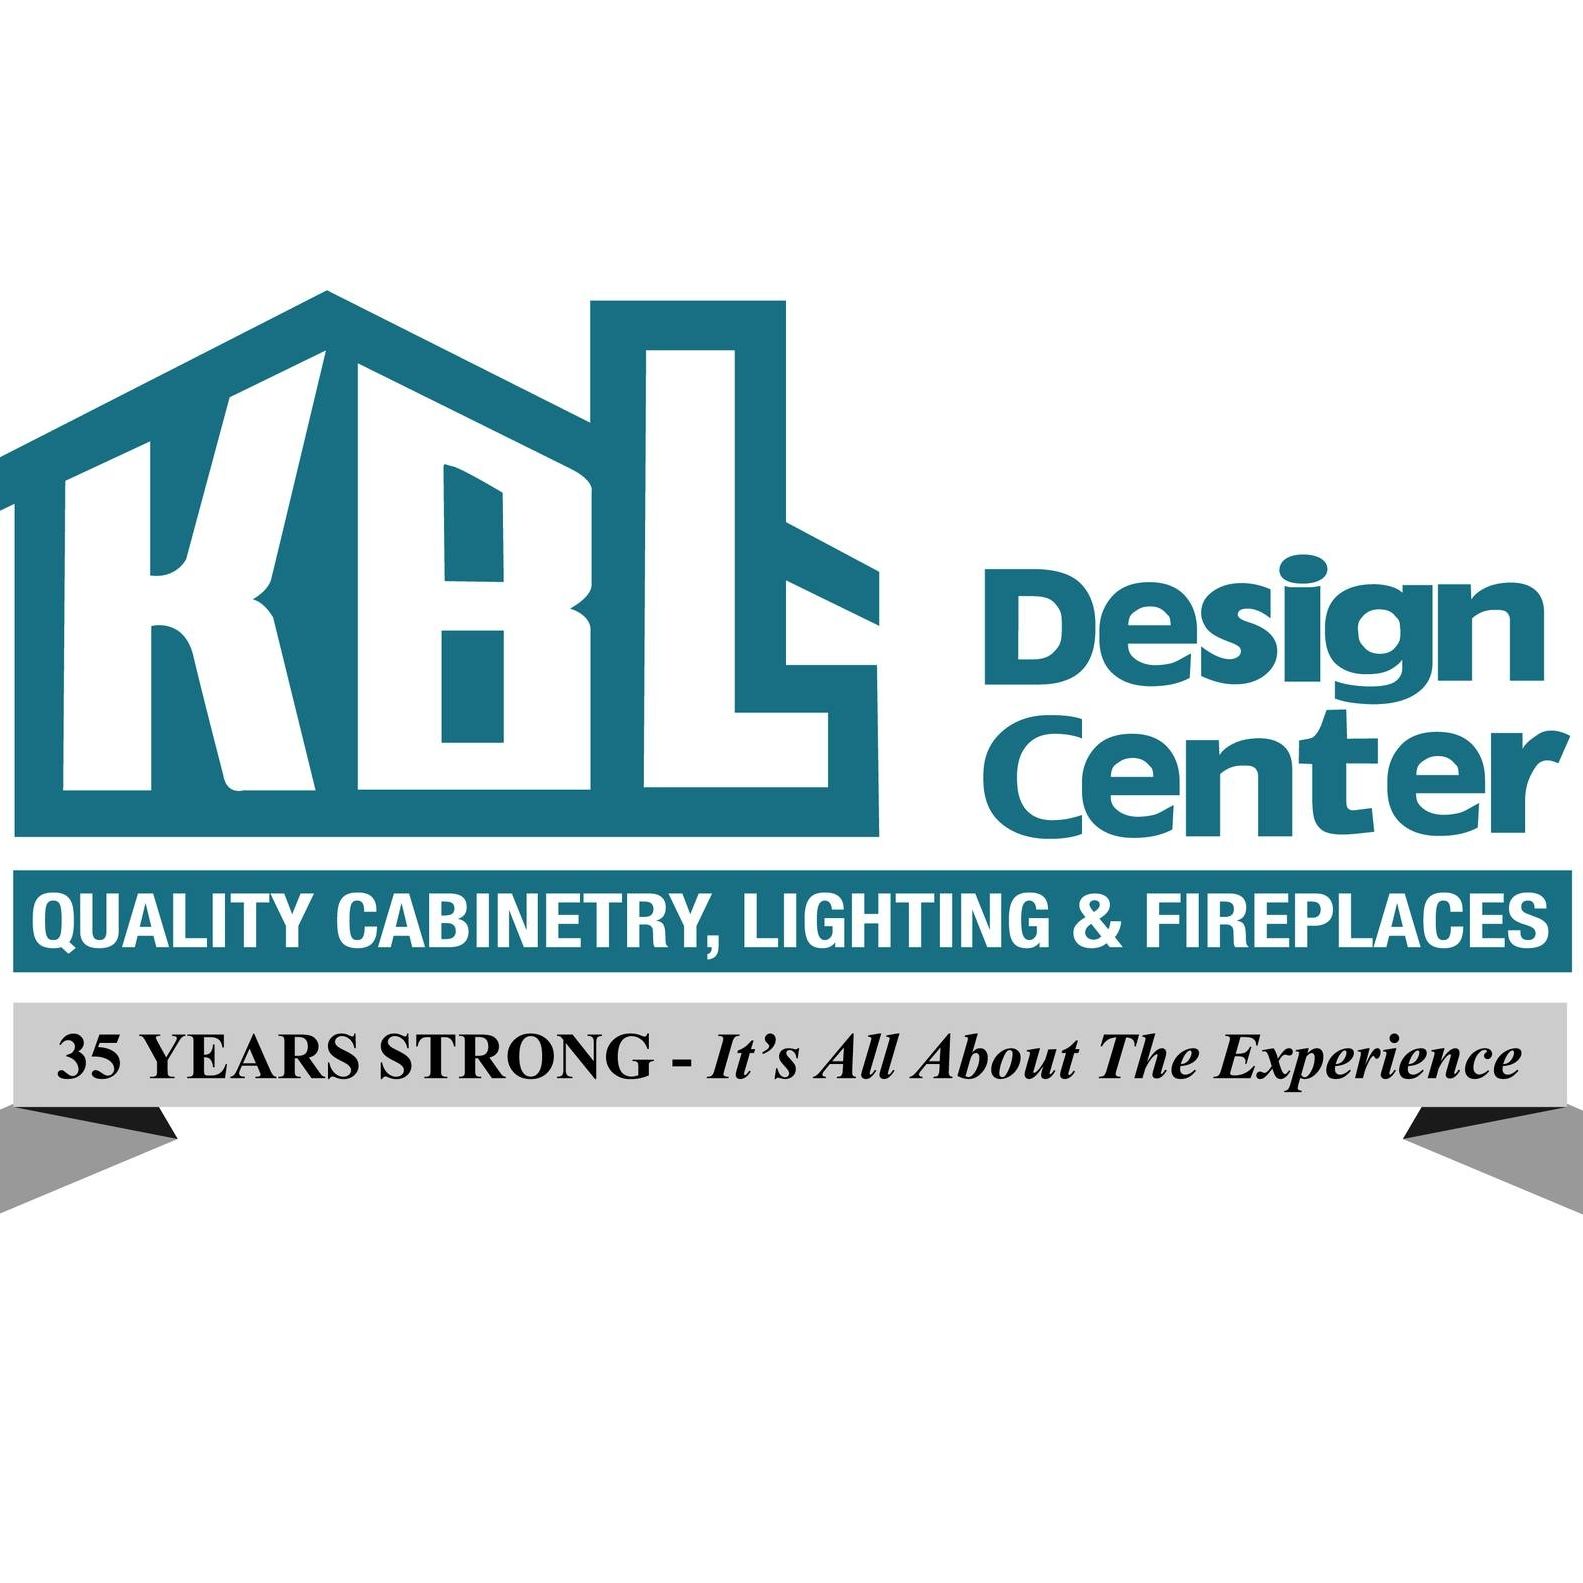 KBL Design Center